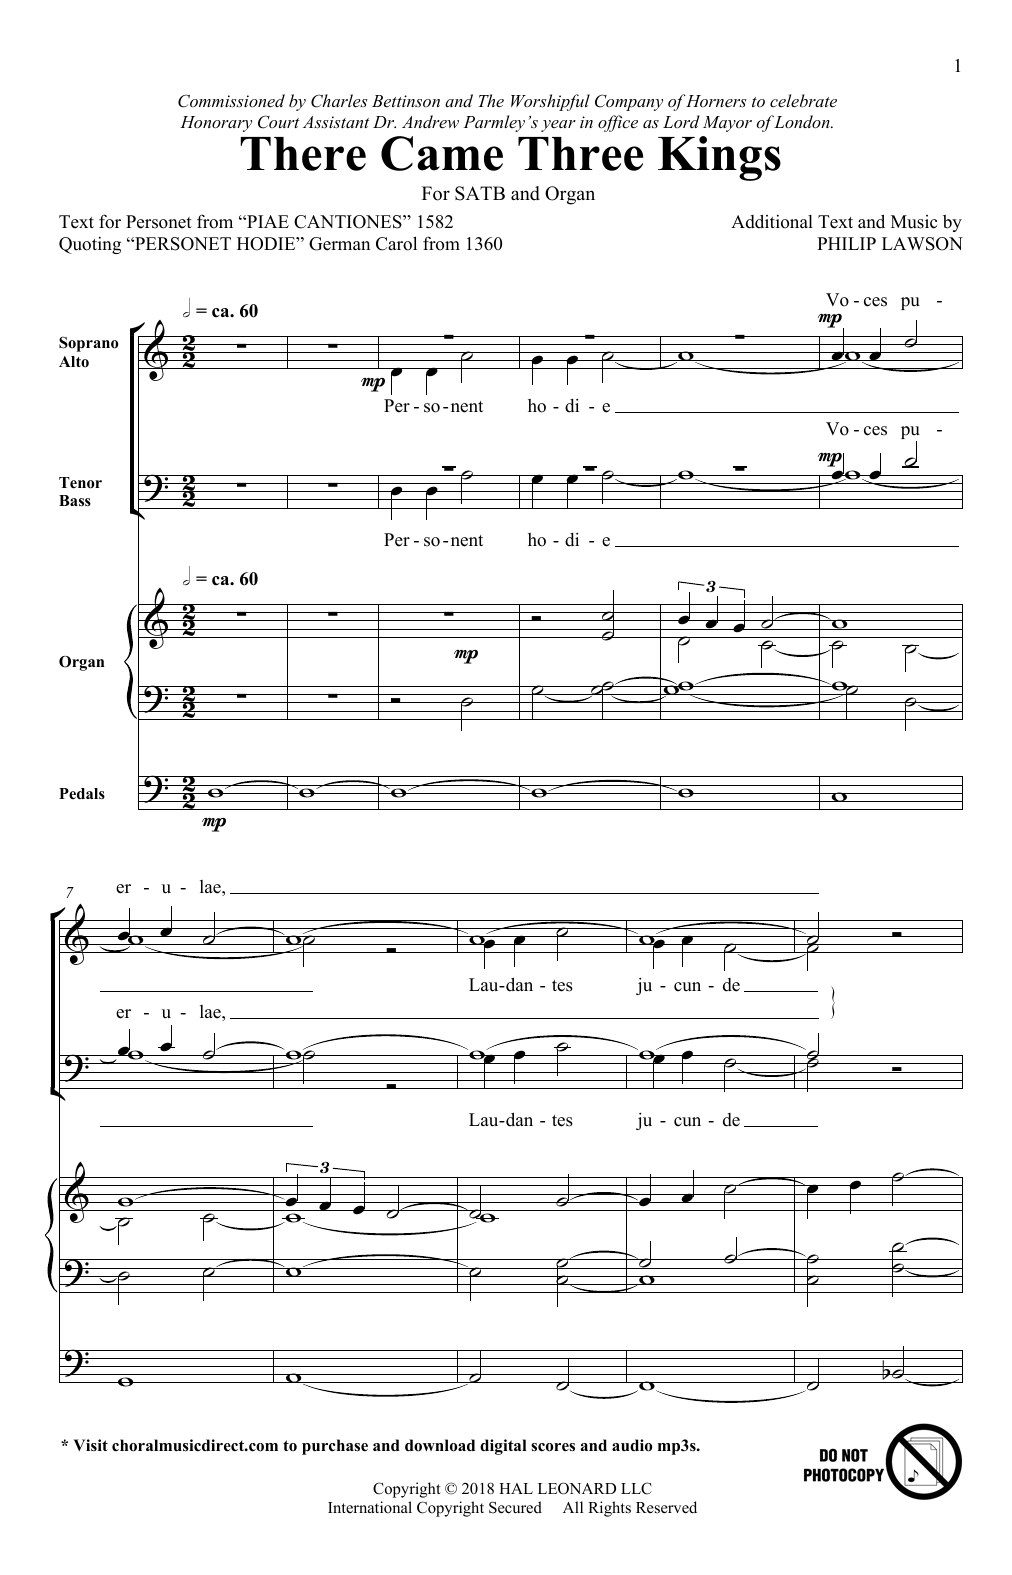 There Came Three Kings (SATB Choir) von Philip Lawson